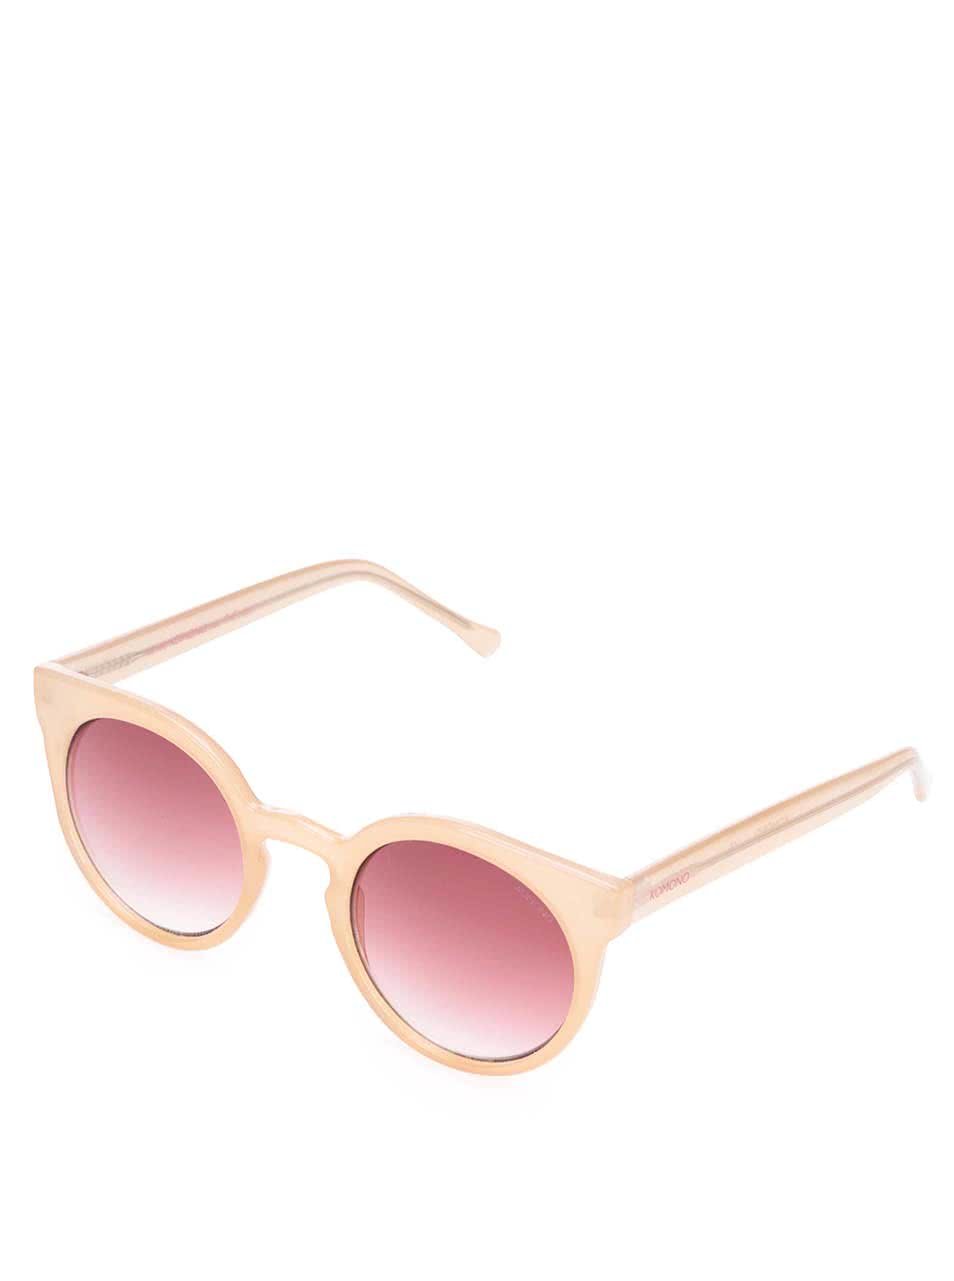 Růžové dámské sluneční brýle Komono Lulu